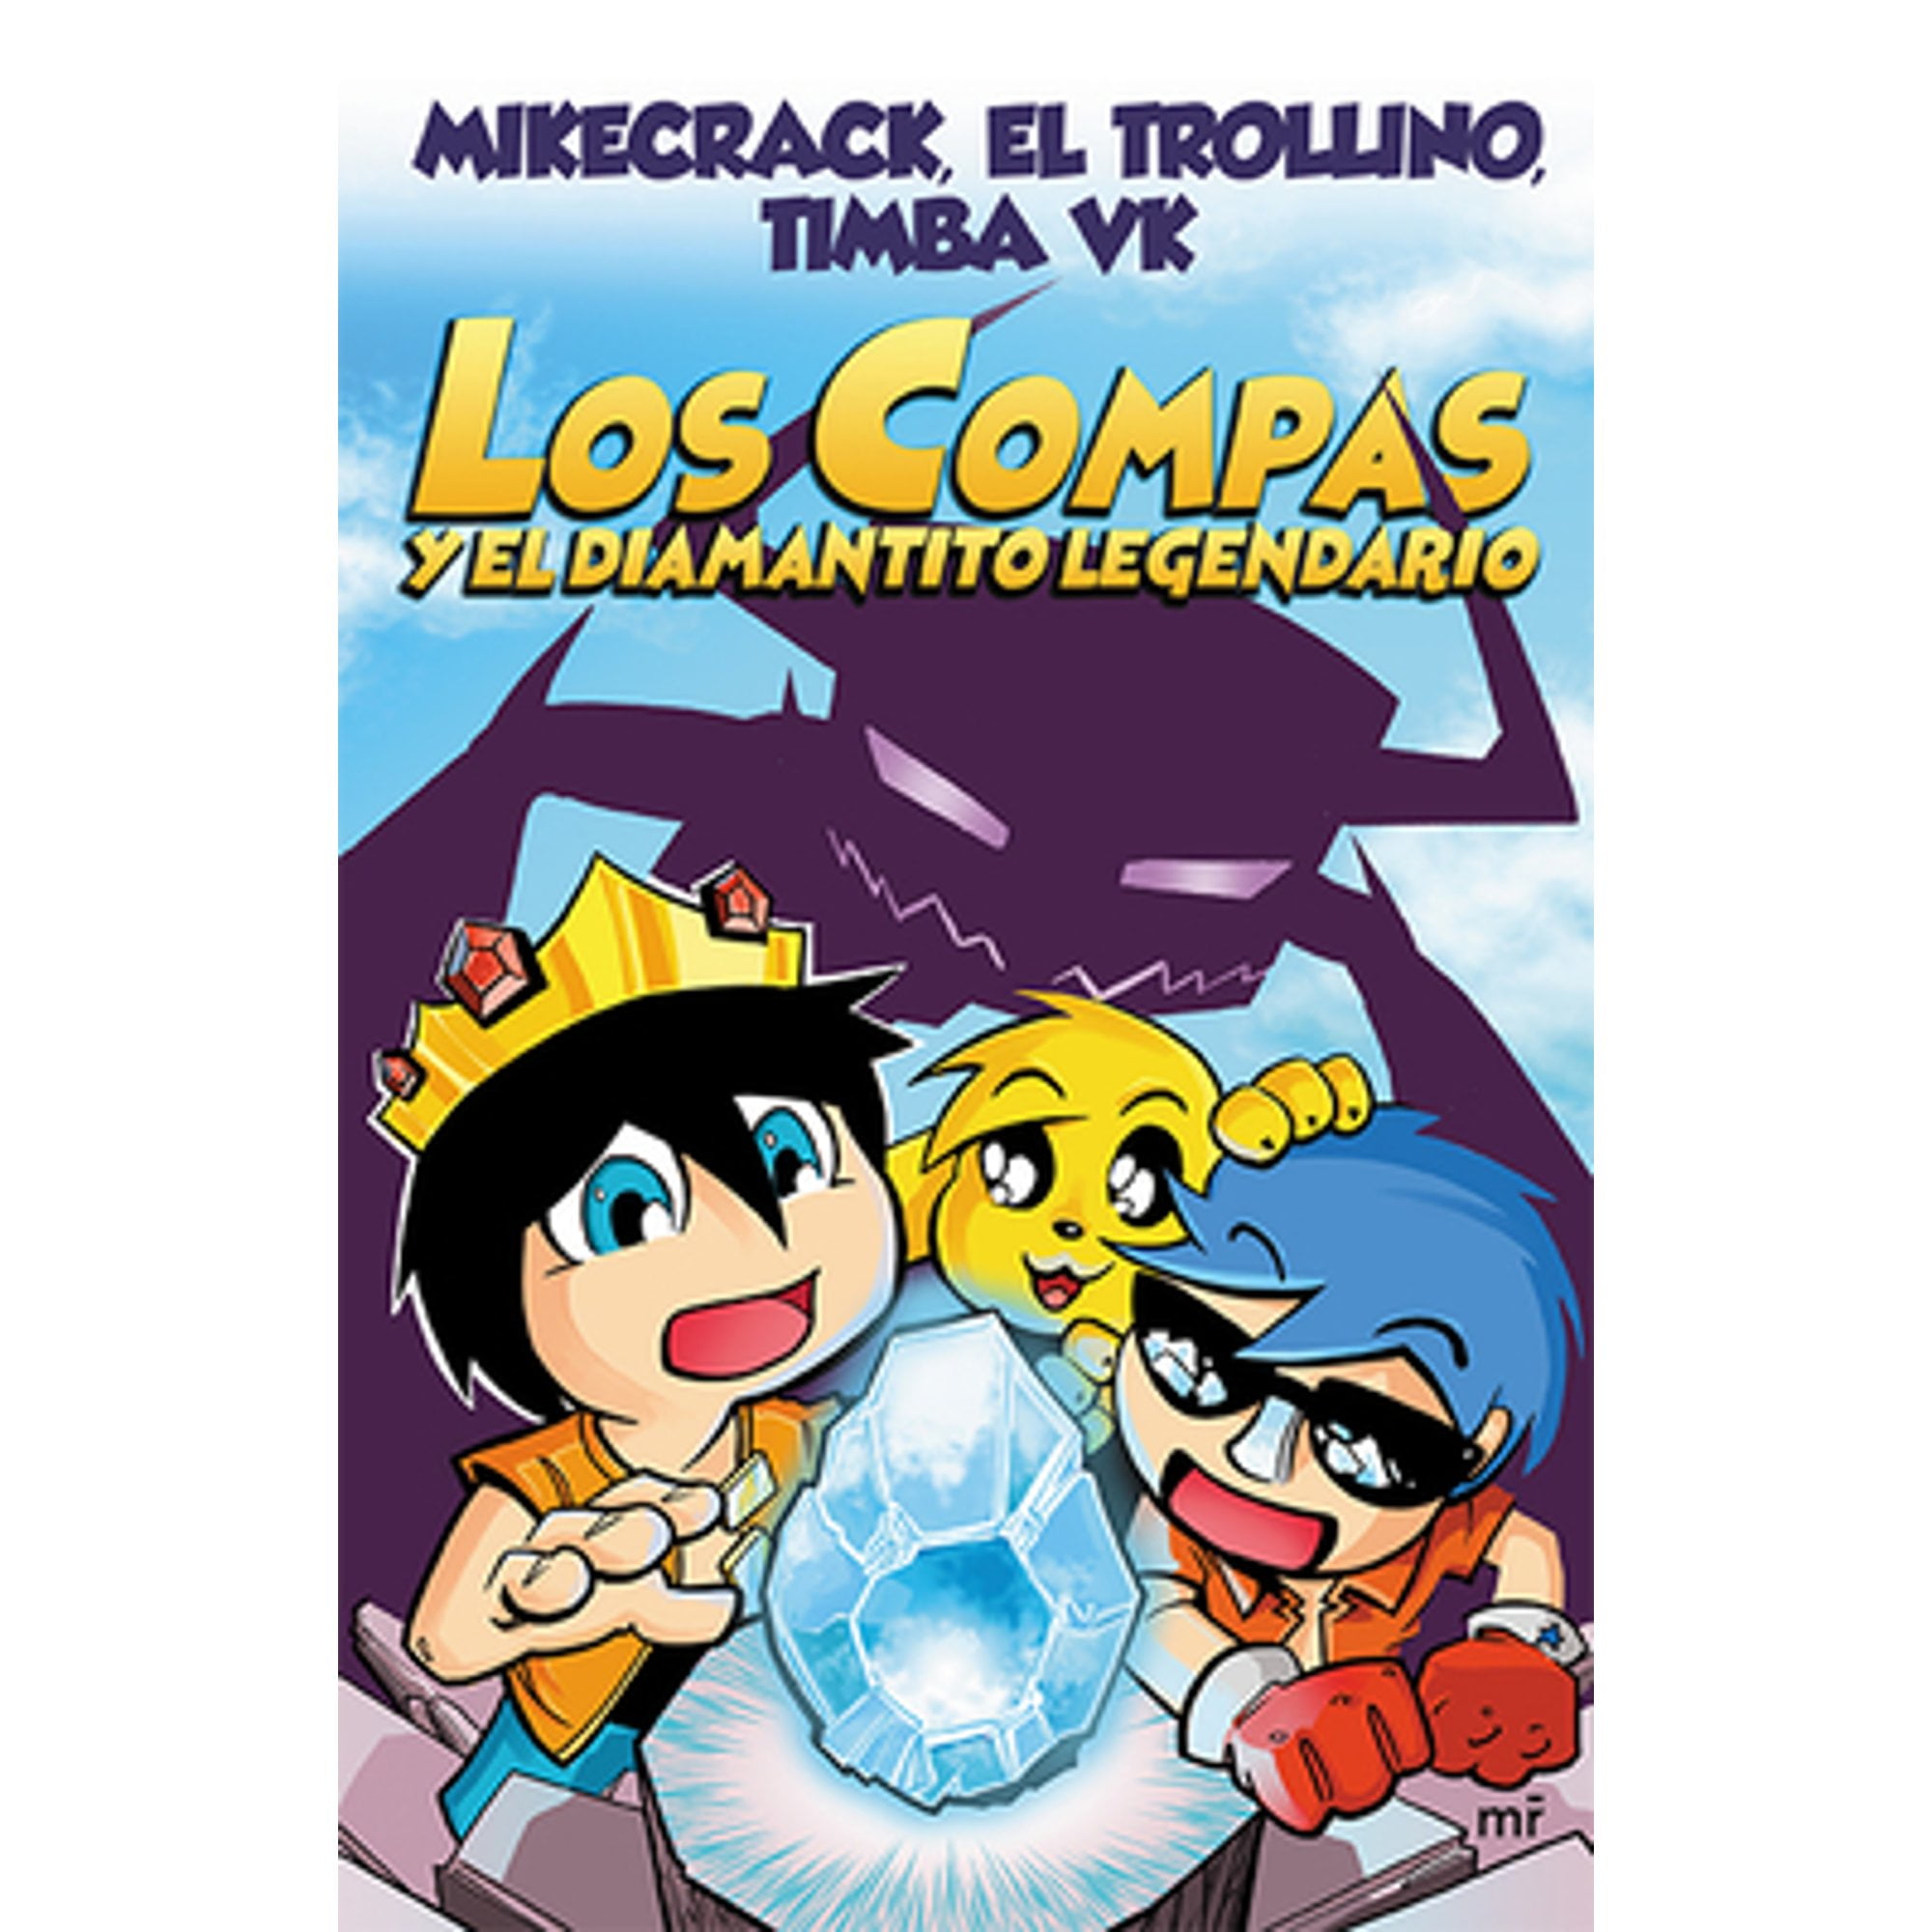 Los Compas Y El Diamantito Legendario (Pre-Owned Paperback 9786070756047)  by Mikecrack Mikecrack, El Trollino El Trollino, Timba Vk Timba Vk -  